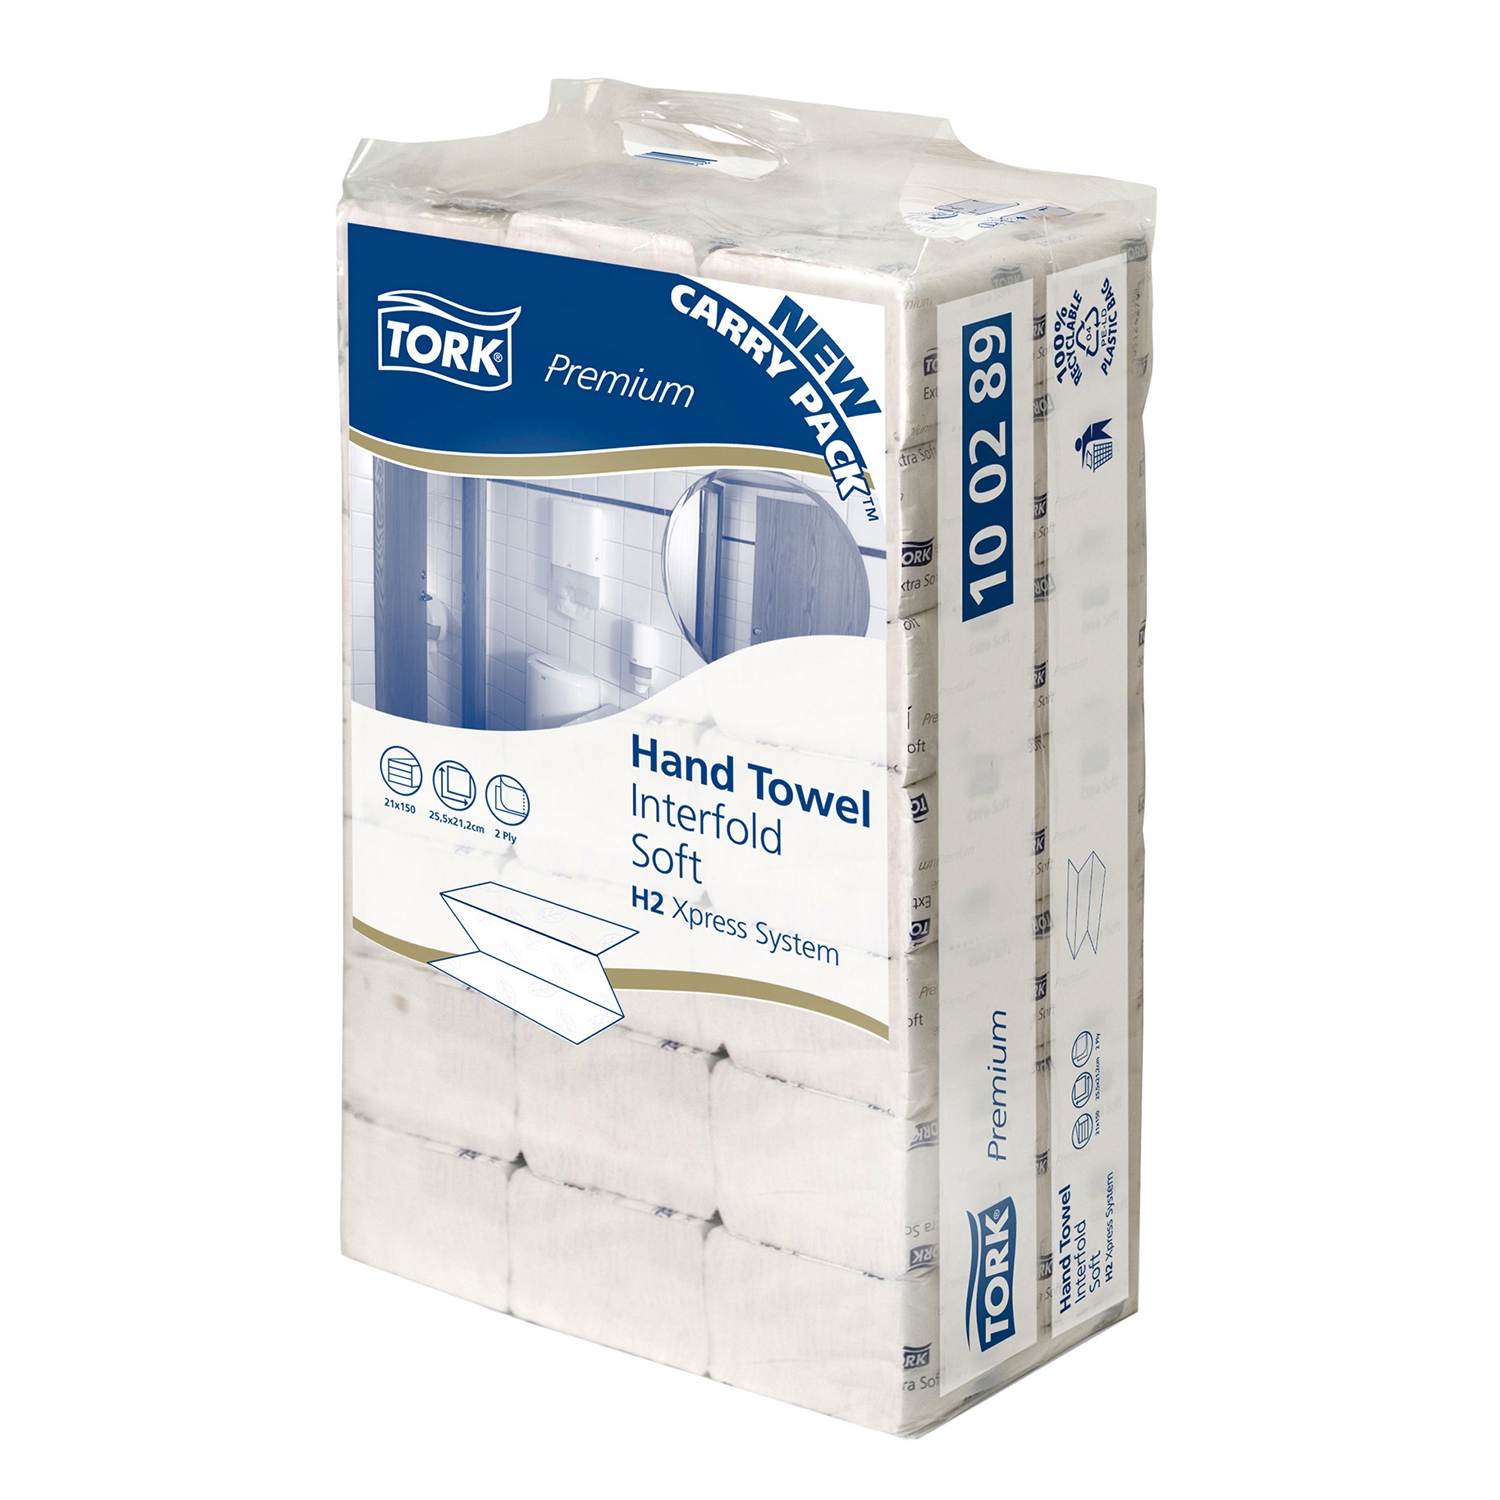 TORK serviettes papier H2 - feuilles 2 couches - carton (21 x 150 feuil.)